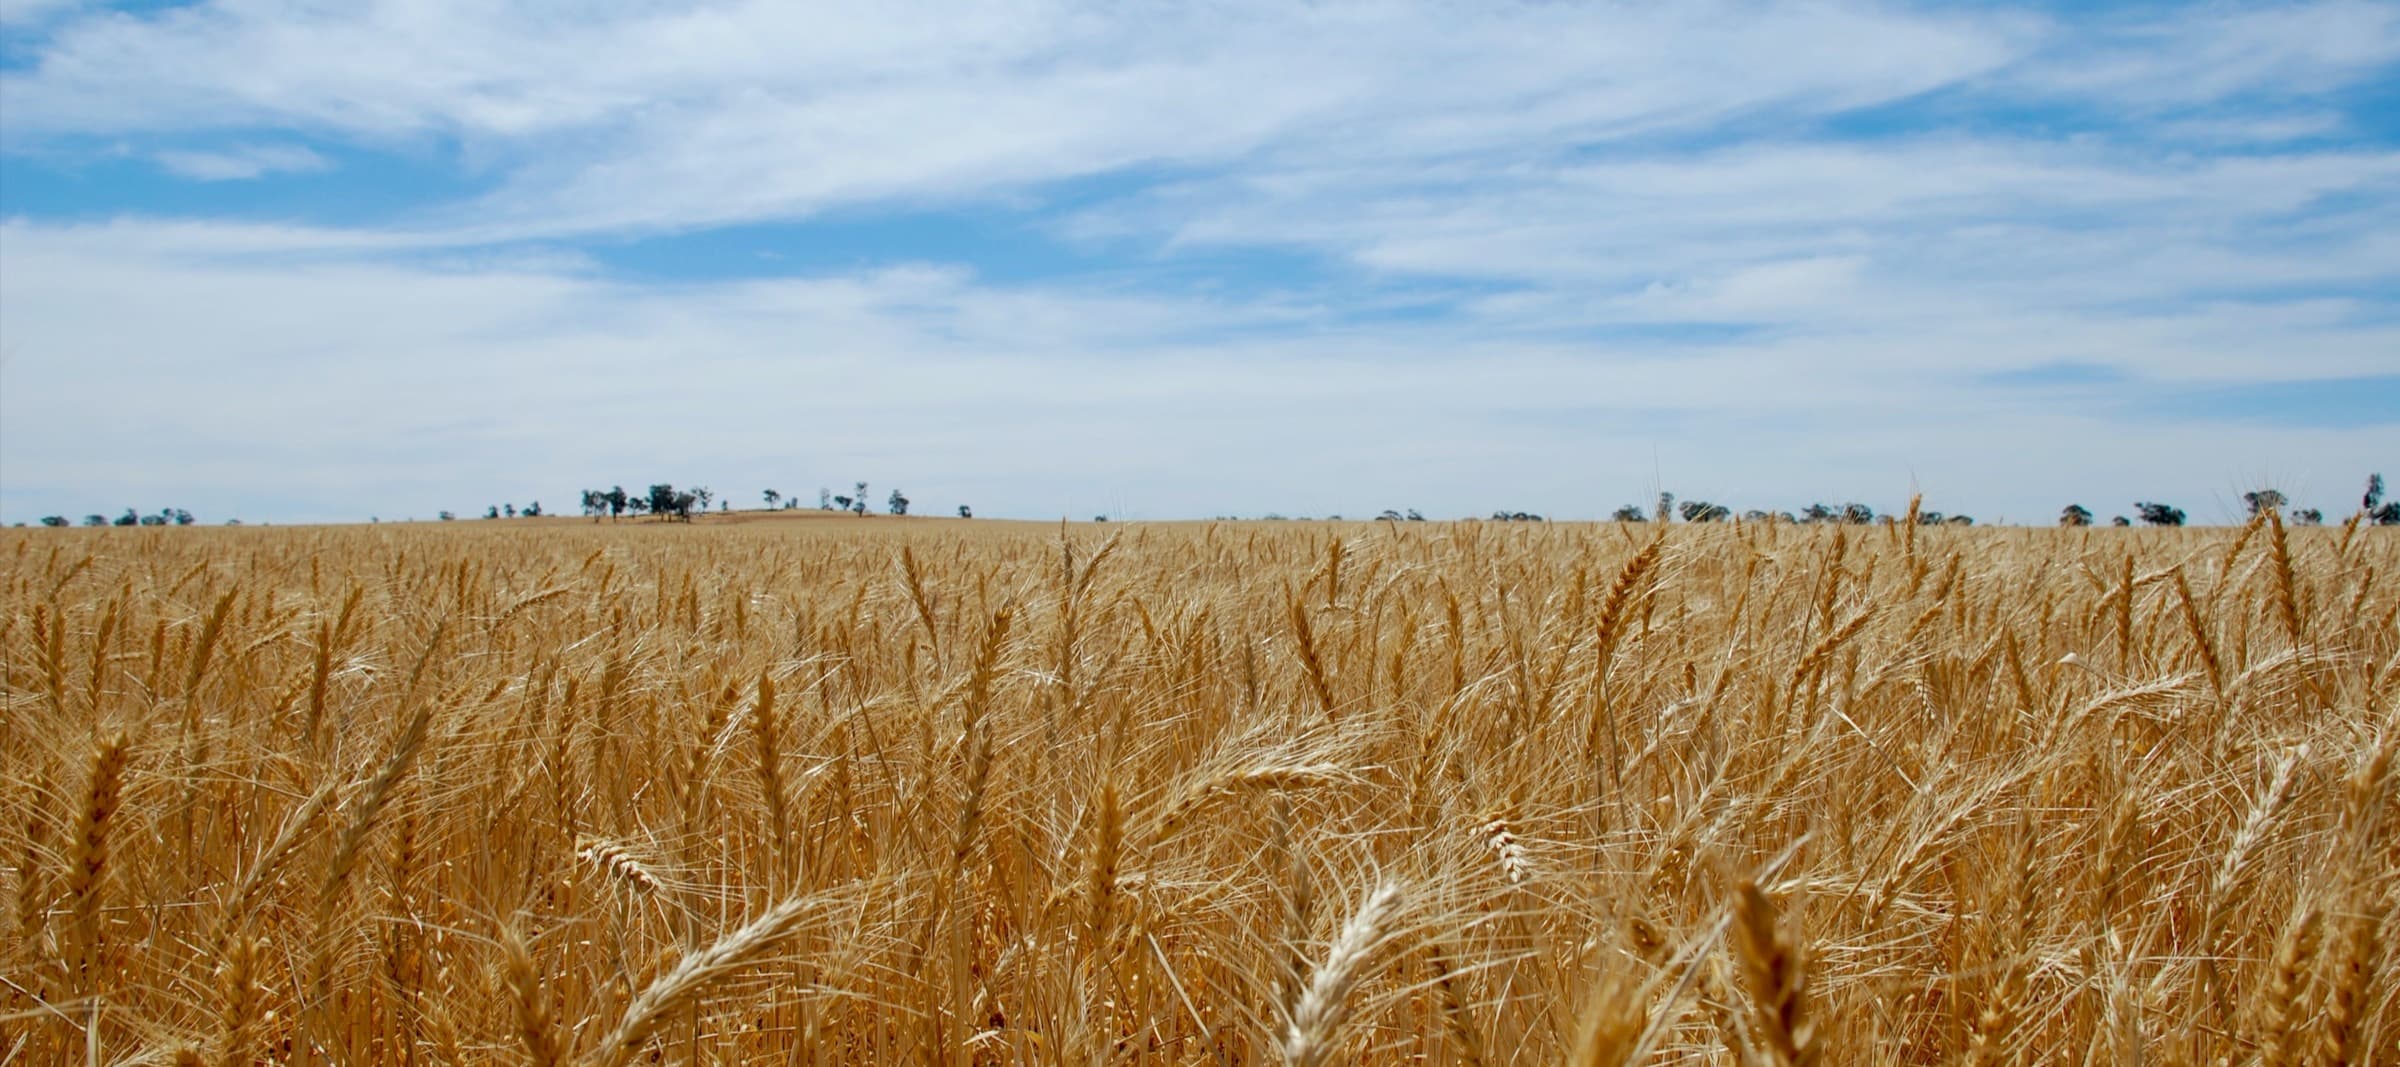 Фото новости: "Цены на пшеницу резко выросли после приостановки зерновой сделки"